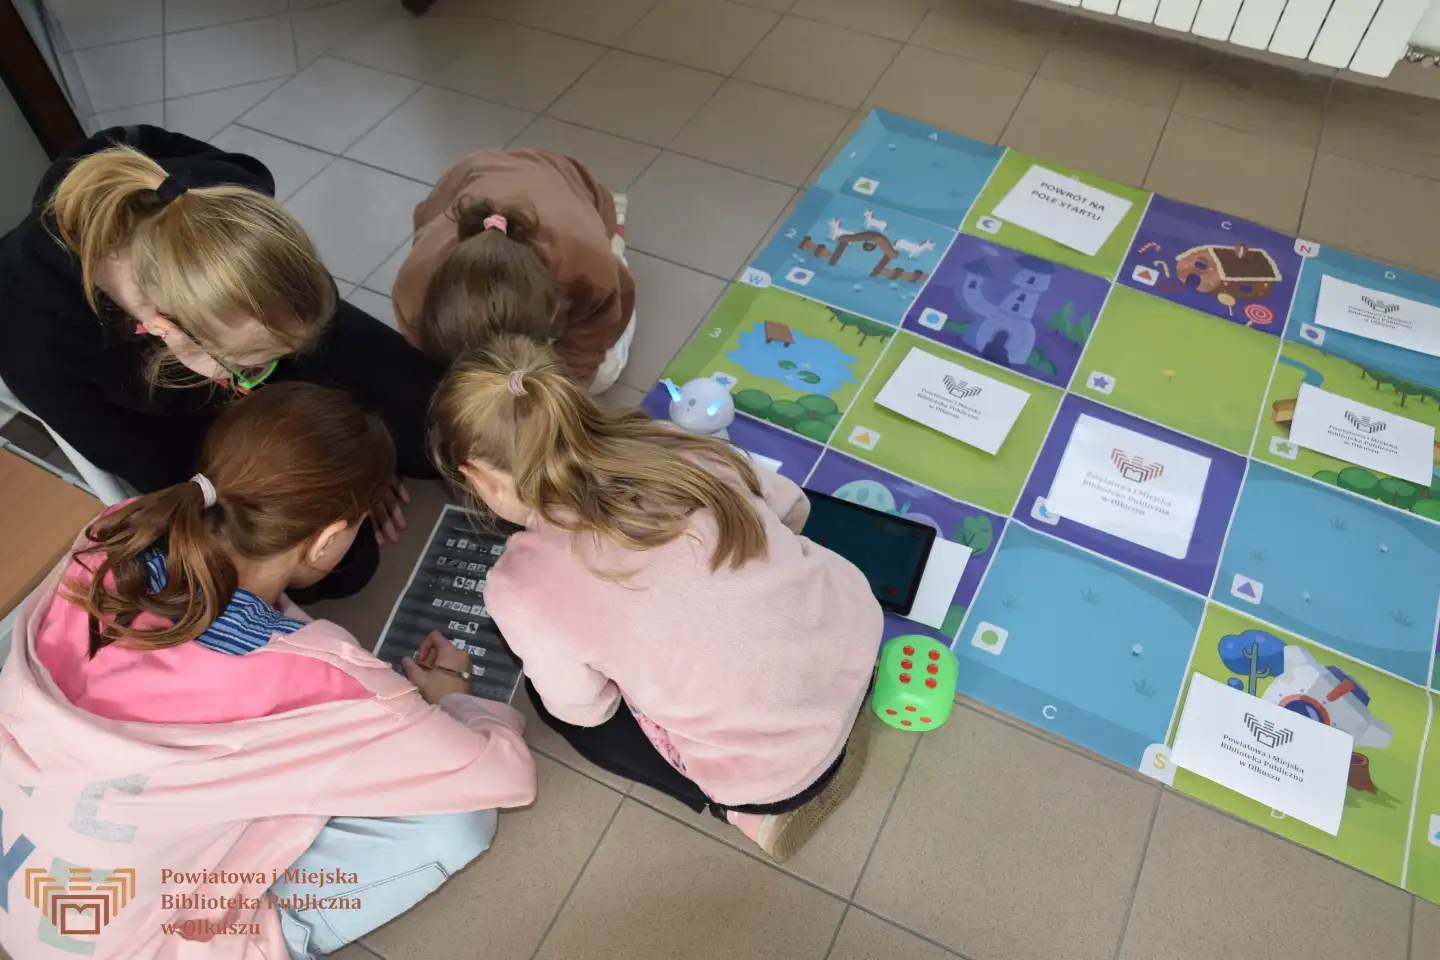 Grupa dziewczynek siedzi na podłodze i rozwiązuje zadania na kartce. Obok grupy widoczna gra planszowa w formie maty oraz robot Photon.